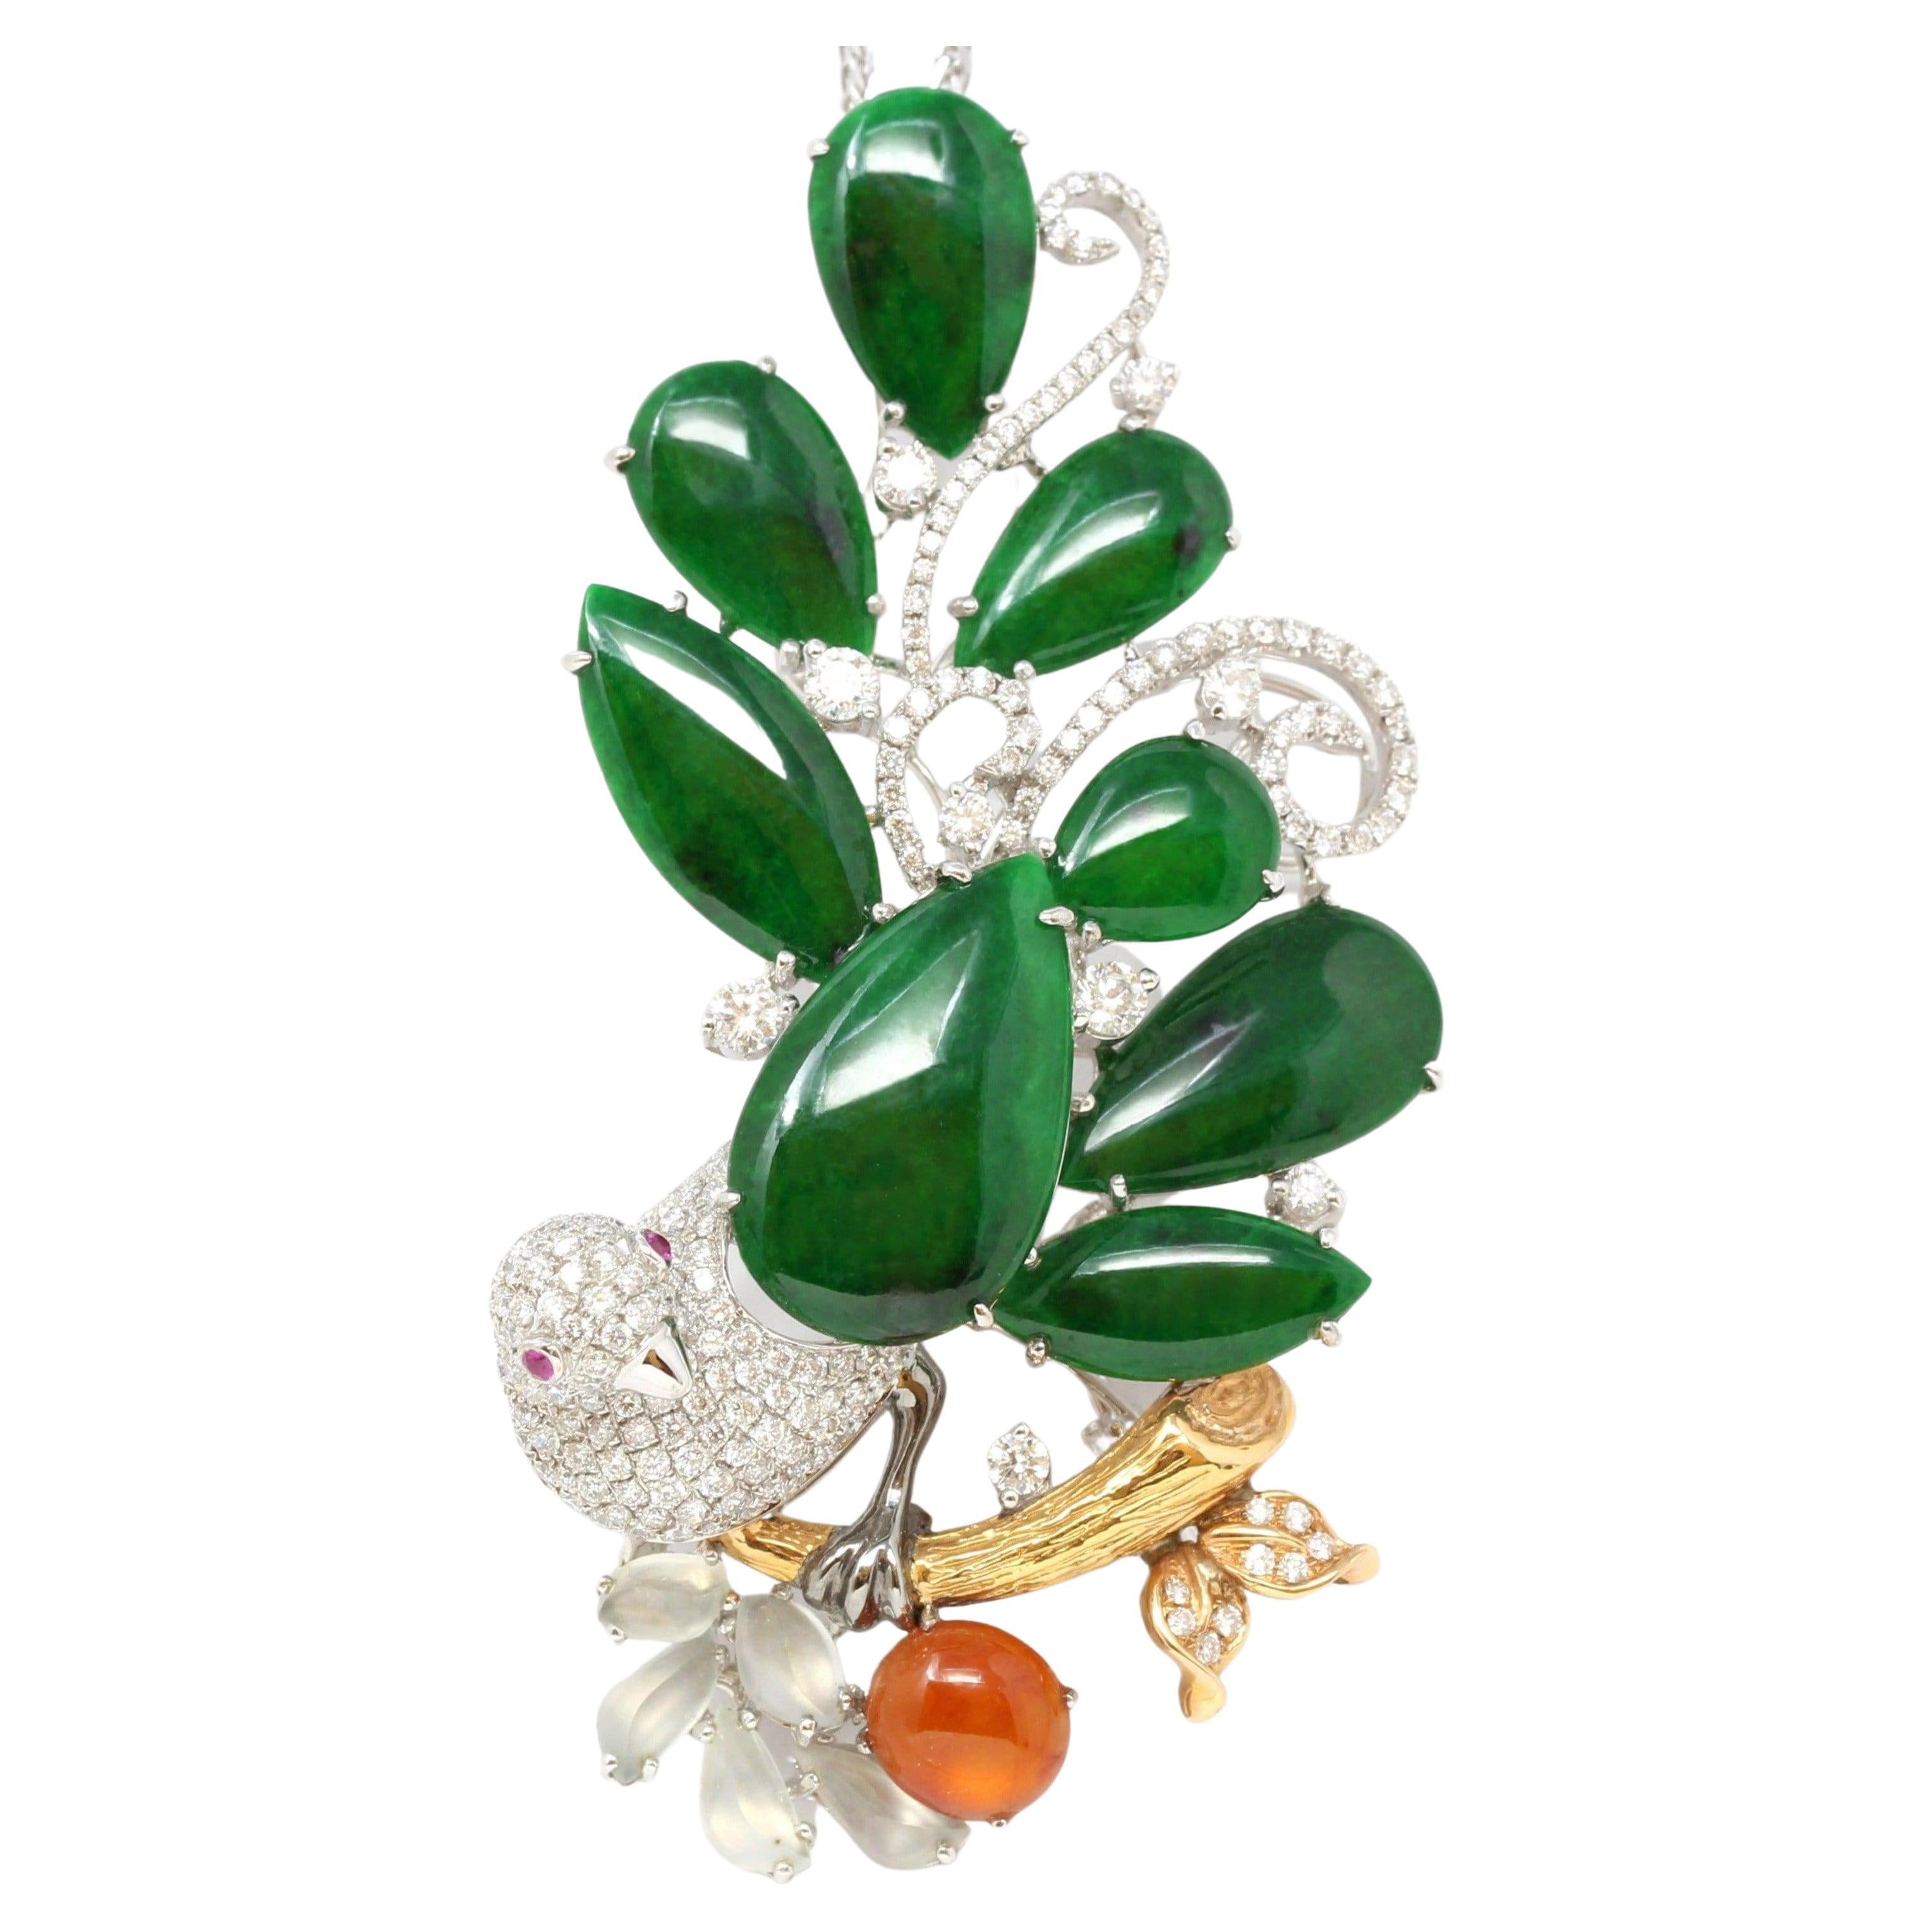 "Vogel auf einem Baum" RealJade Co. Signatur Old Mine Jadeit Brosche Halskette aus Jadeit im Angebot